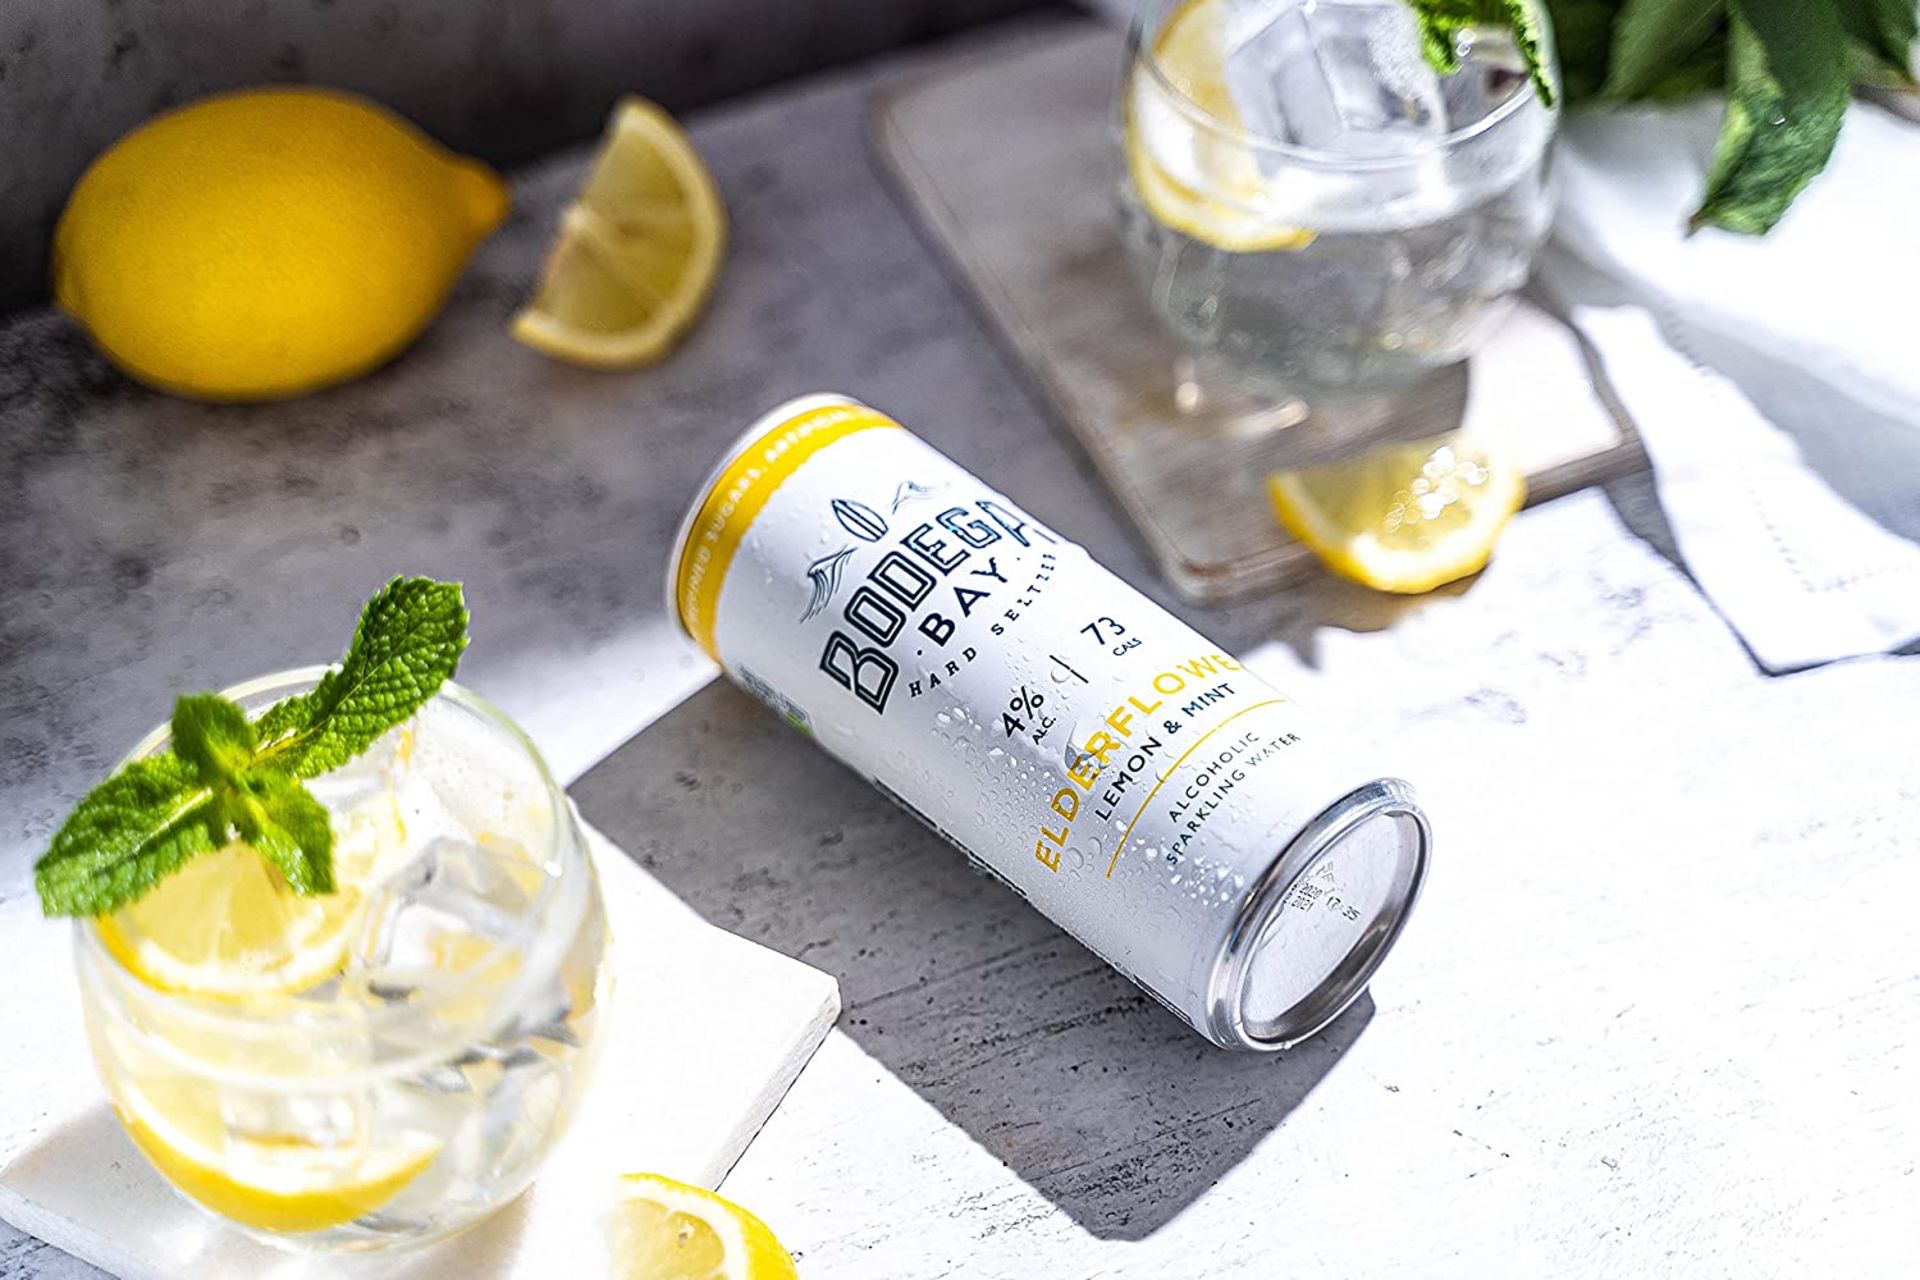 24 x Bodega Bay Hard Seltzer 250ml Alcoholic Sparkling Water Drinks - Elderflower Lemon & Mint - - Image 4 of 7